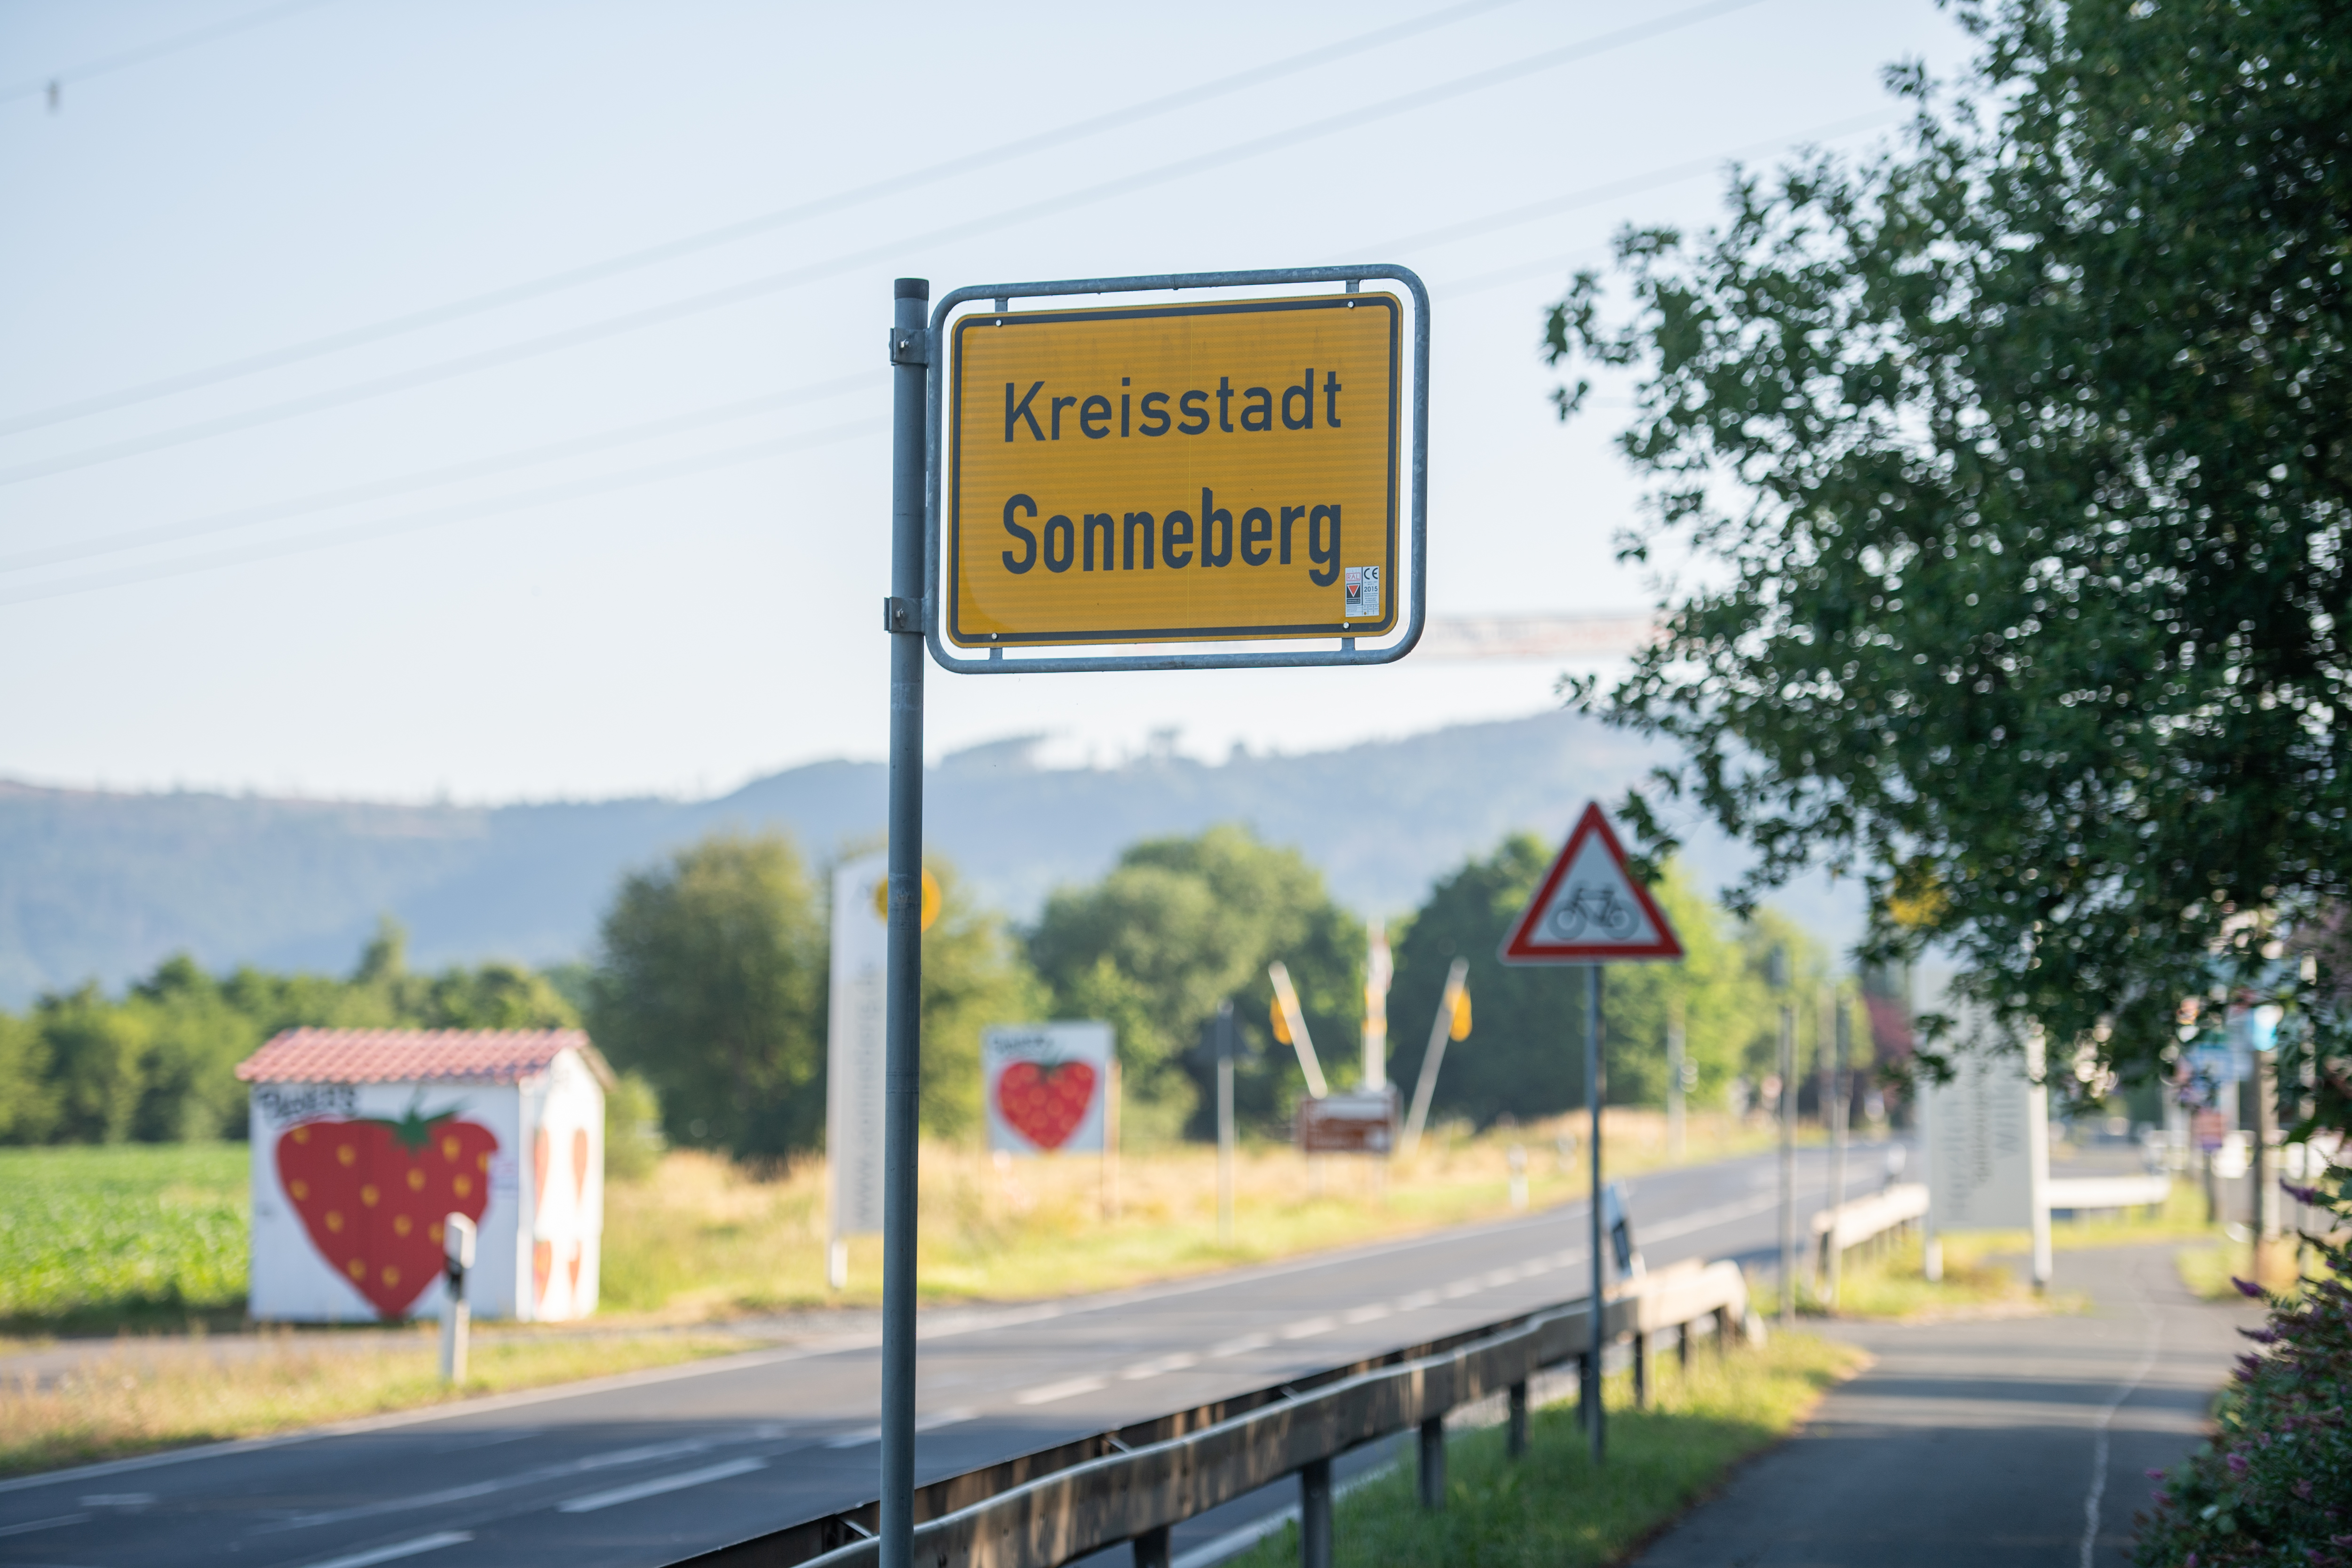 Seit knapp einem Jahr ist ein AfD-Politiker Landrat im thüringischen Kreis Sonneberg.